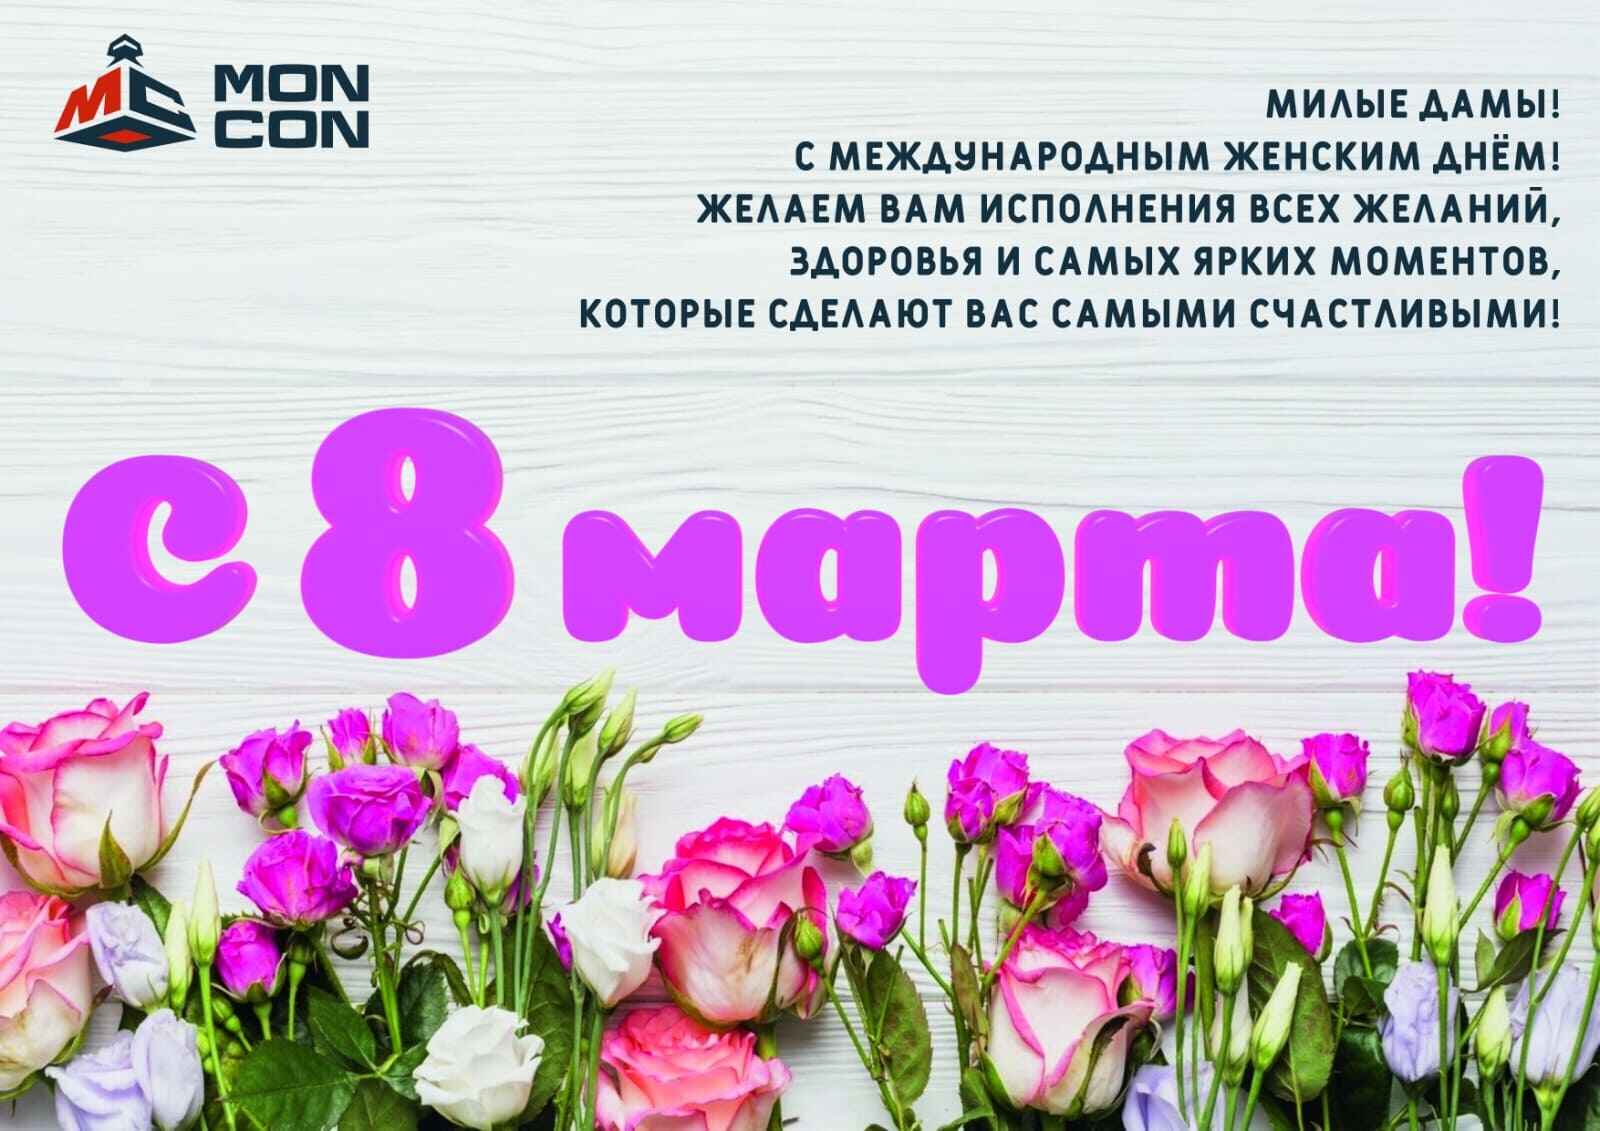 TОО «Moncon» поздравляет с праздником весны - 8 марта!